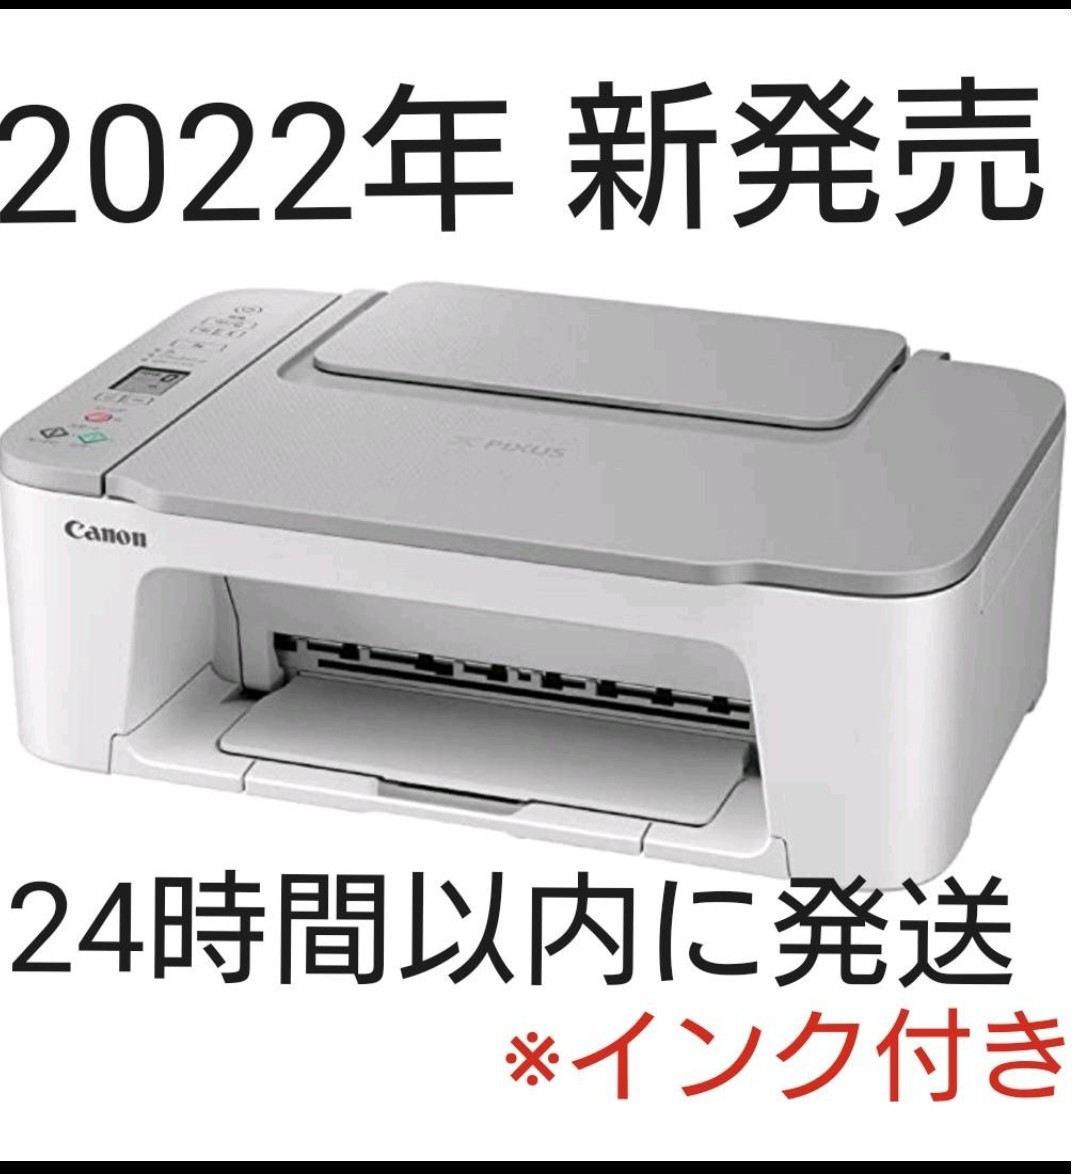 新品 CANON プリンター コピー機 印刷機 複合機 本体 白 純正インク 